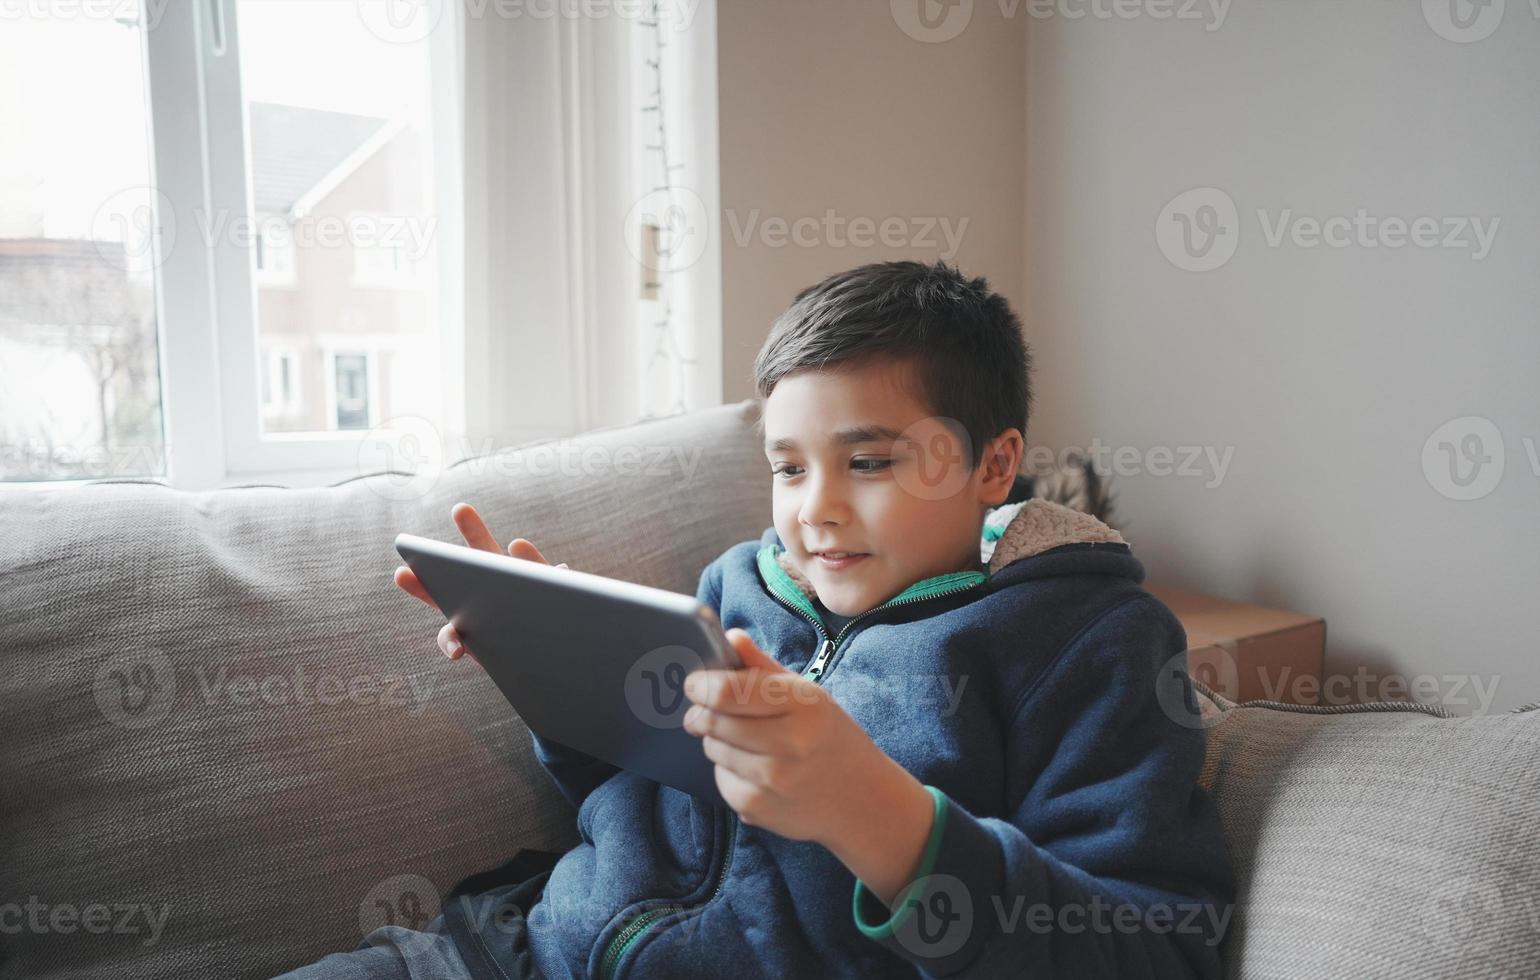 concepto de educación, niño de la escuela sosteniendo un libro electrónico de lectura de tabletas para la tarea, retrato de un niño feliz jugando en línea en Internet con amigos, niño viendo dibujos animados en una libreta digital, niño sentado en el sofá foto